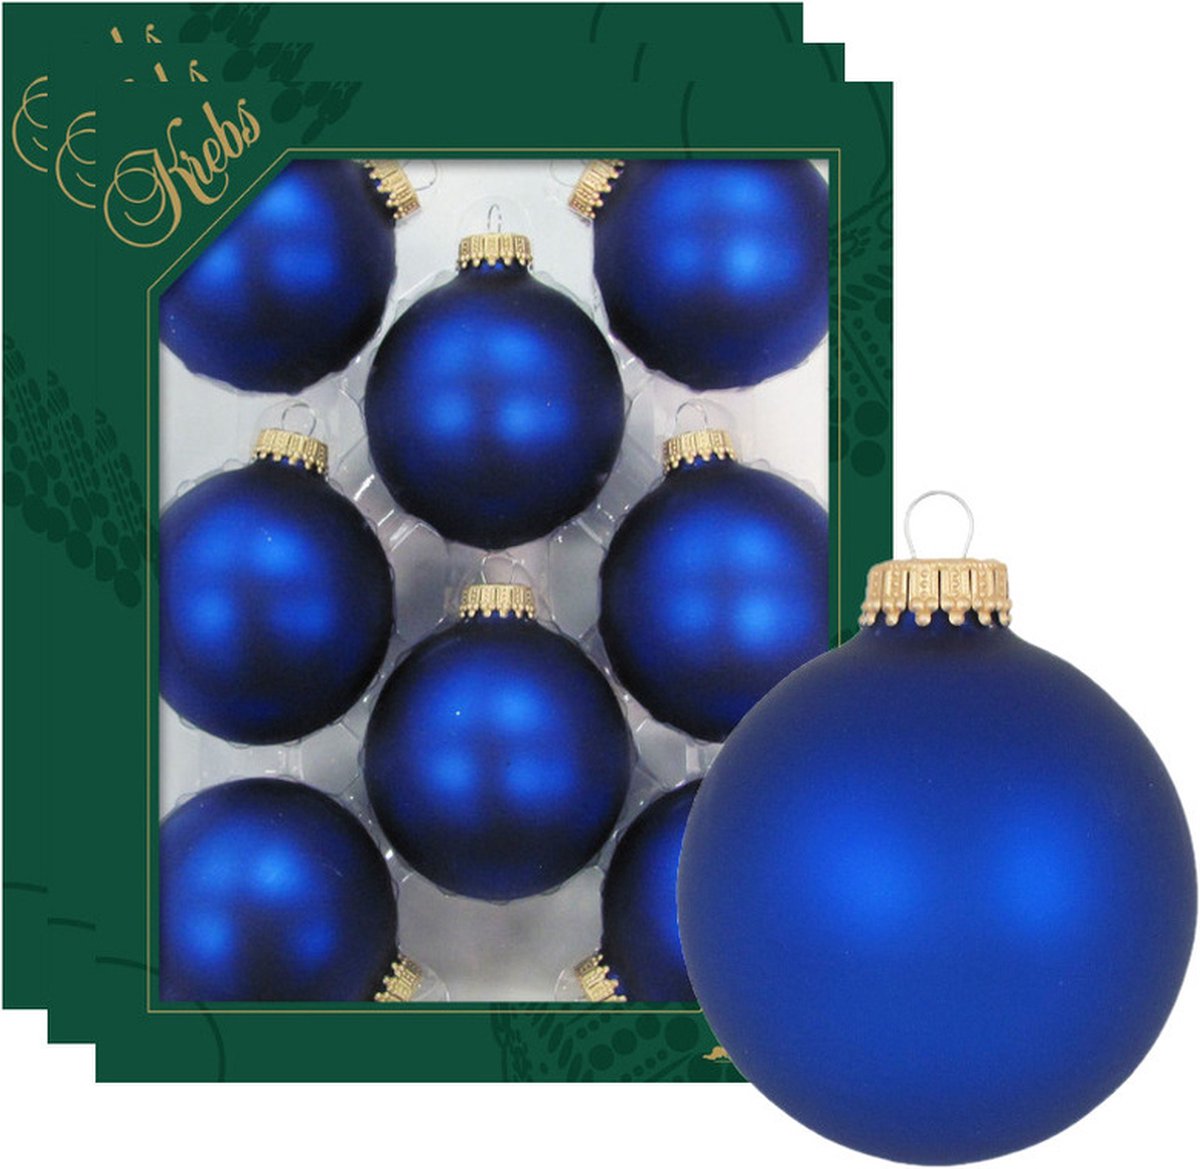 24x Royal velvet blauwe glazen kerstballen mat 7 cm kerstboomversiering - Kerstversiering/kerstdecoratie blauw